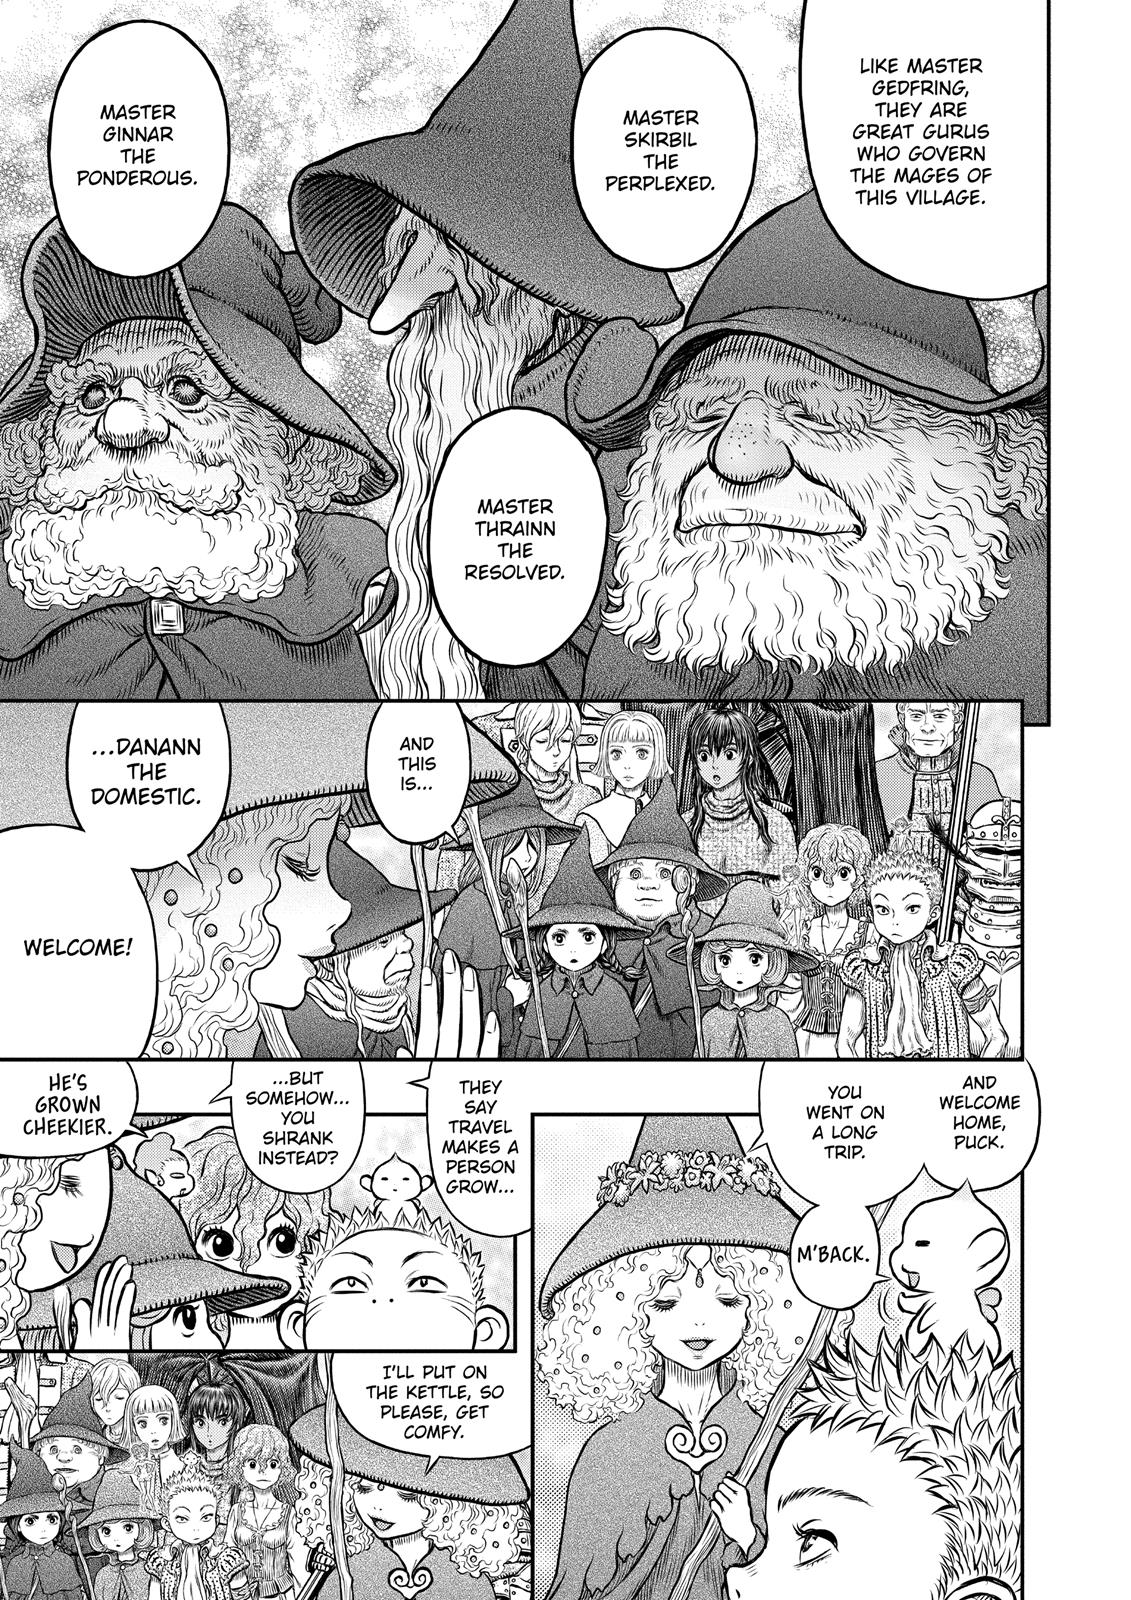 Berserk Manga Chapter 345 image 05